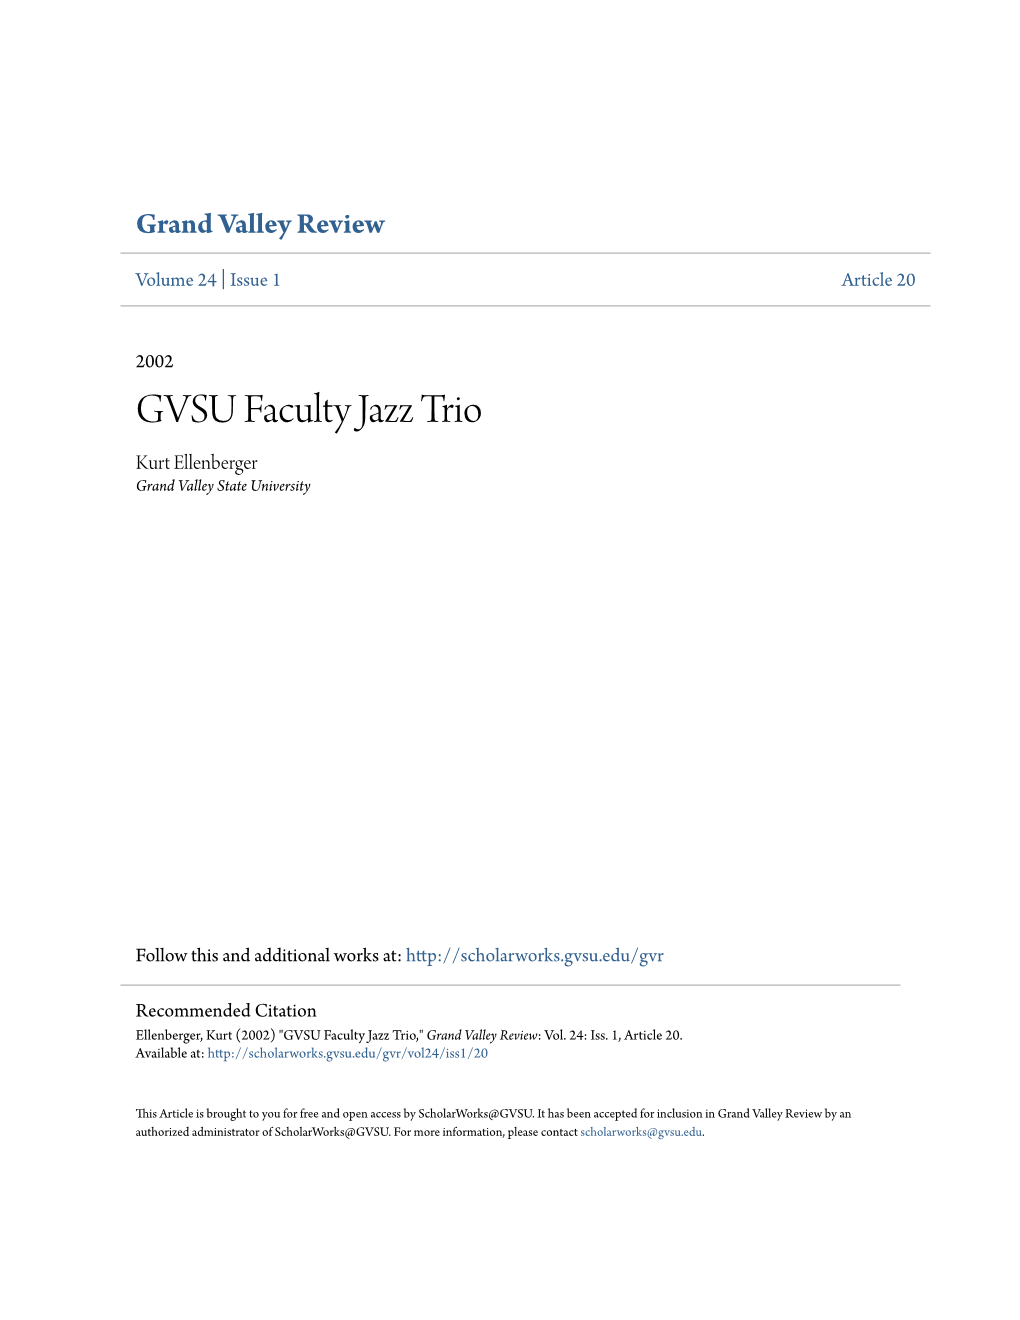 GVSU Faculty Jazz Trio Kurt Ellenberger Grand Valley State University